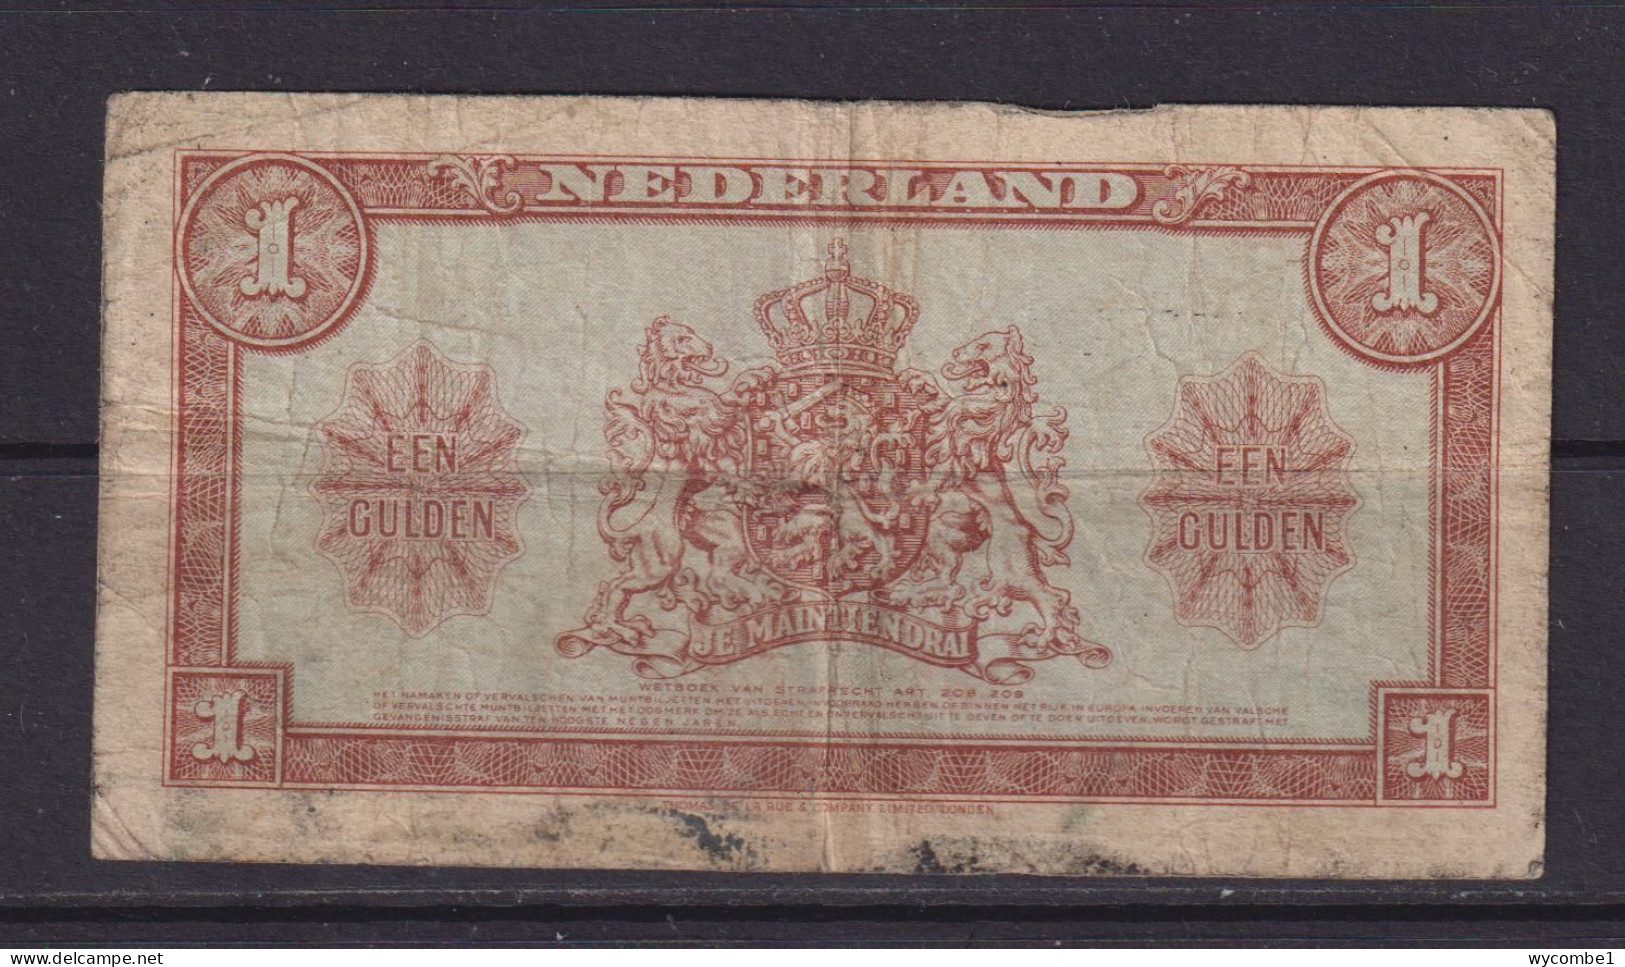 NETHERLANDS - 1945 1 Gulden Circulated Banknote - 1 Gulden